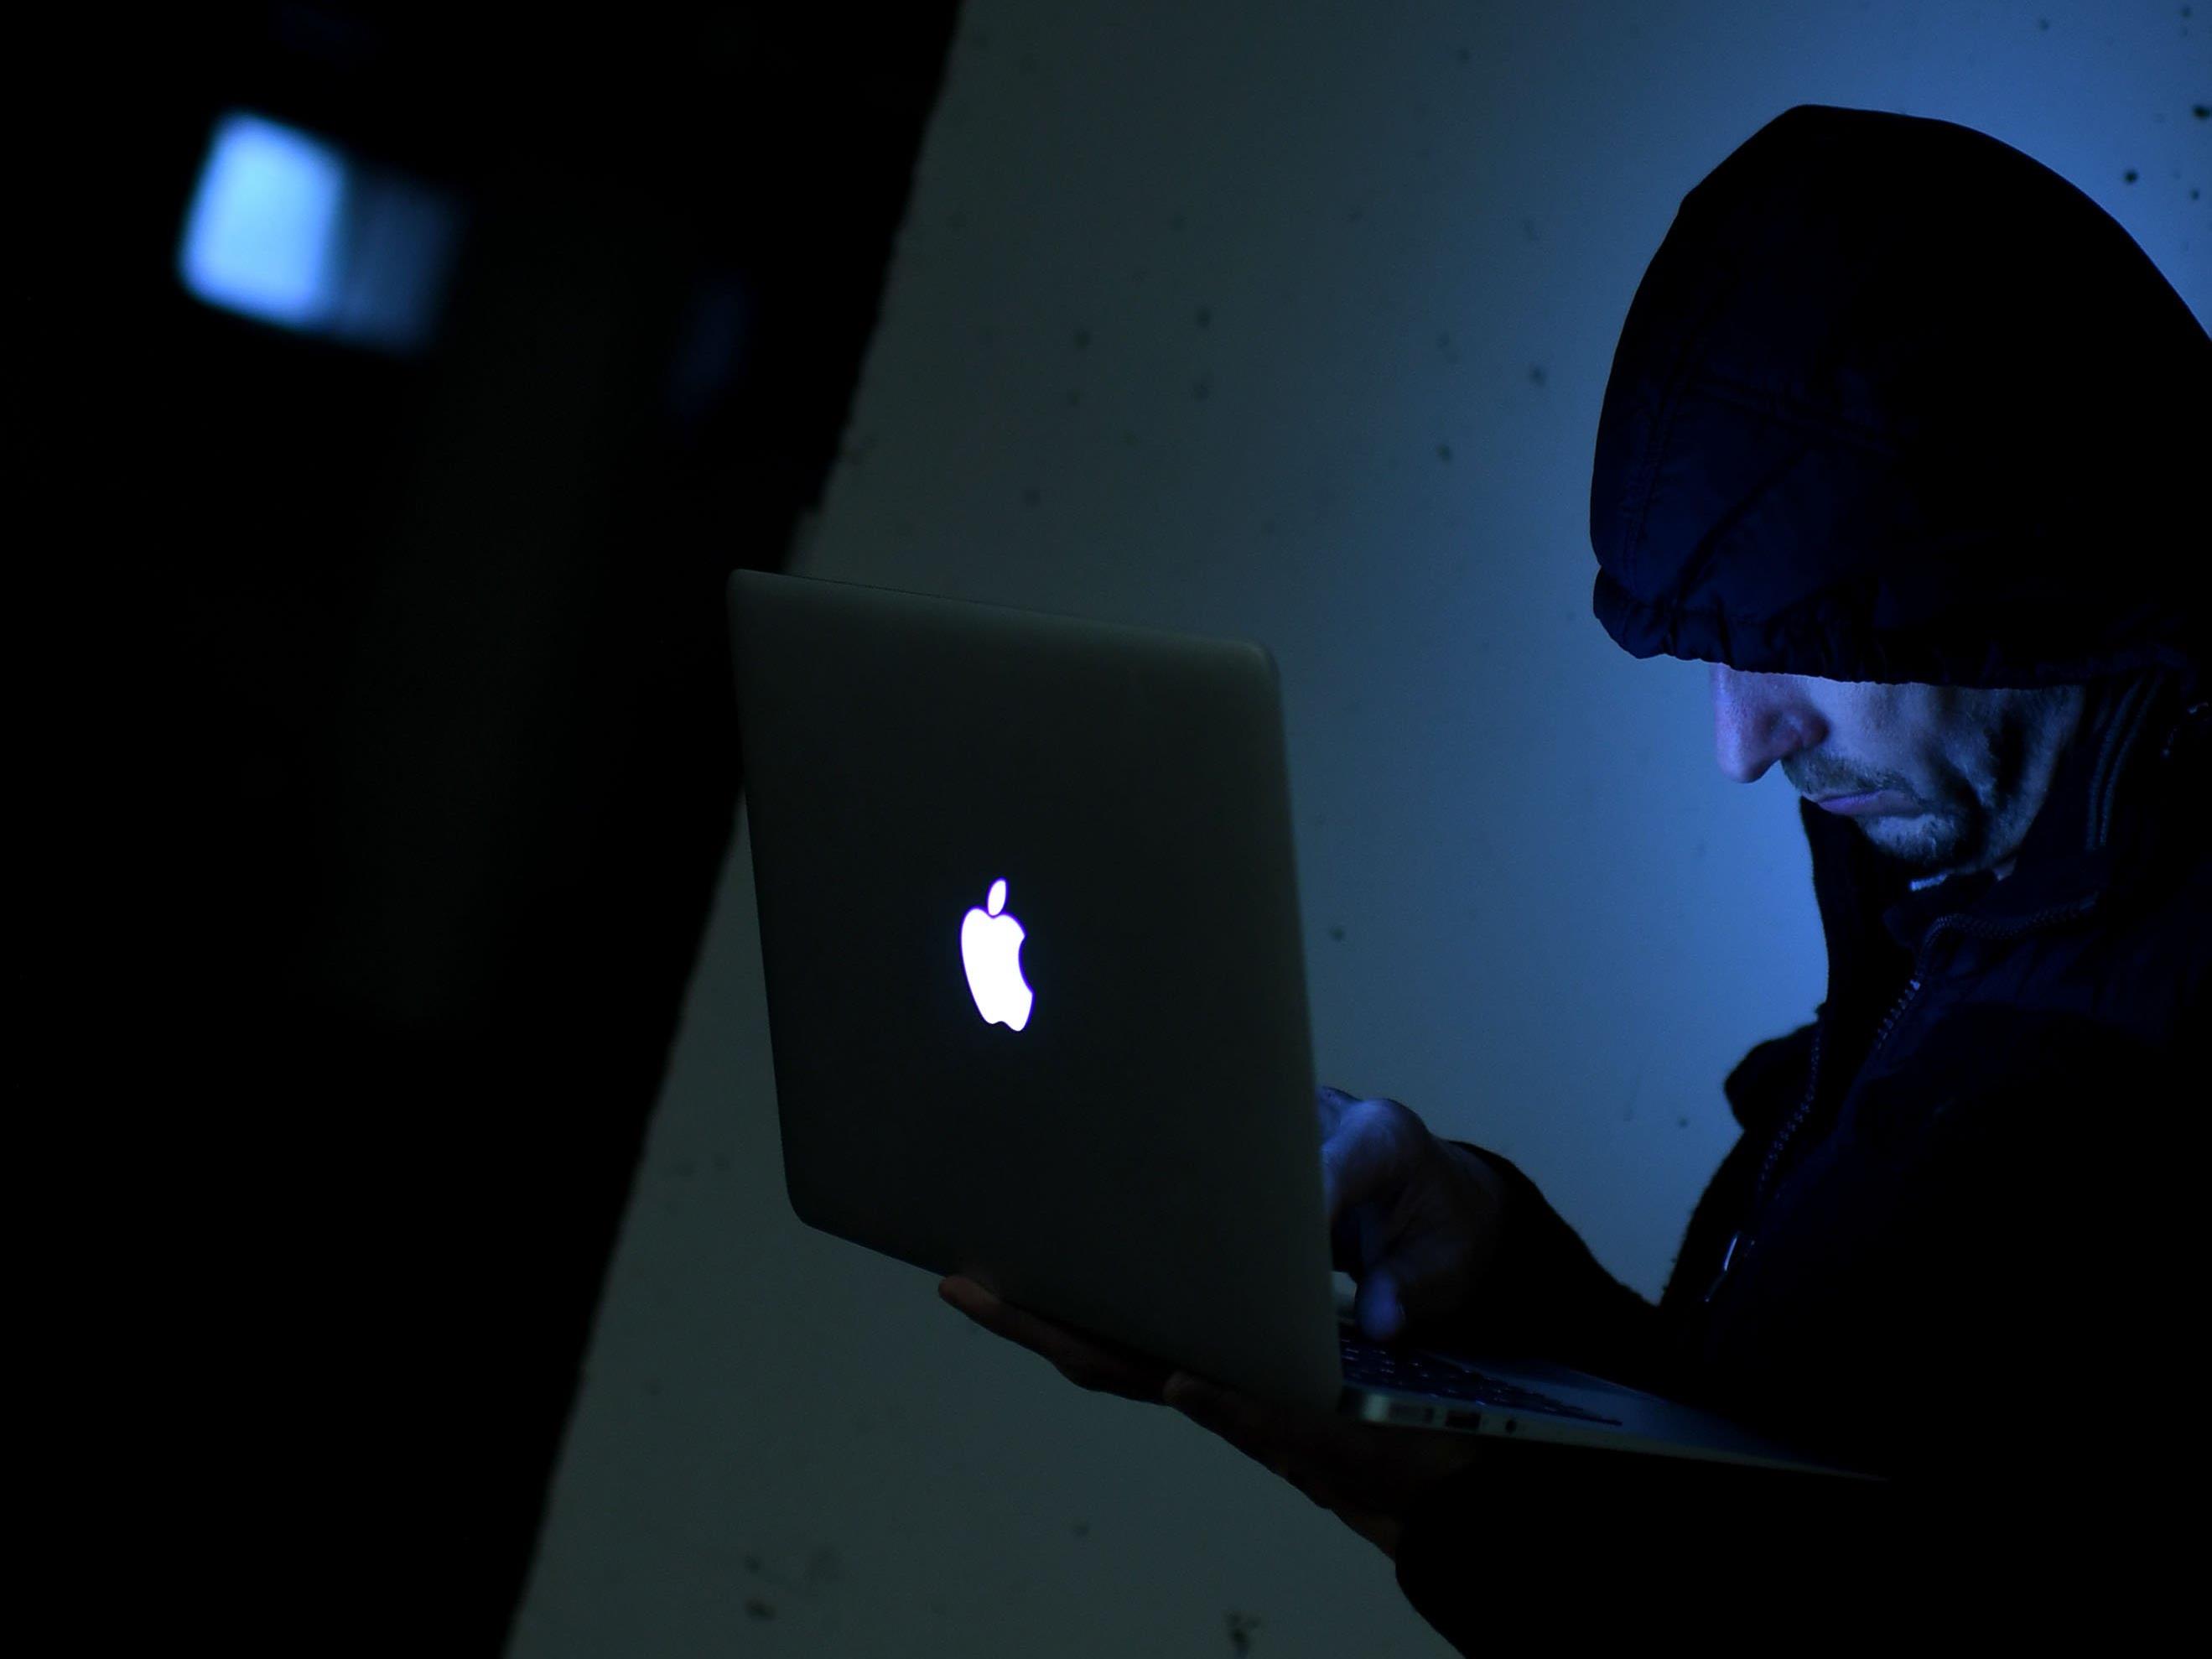 Mehr Phishing und Hacking wird beobachtet